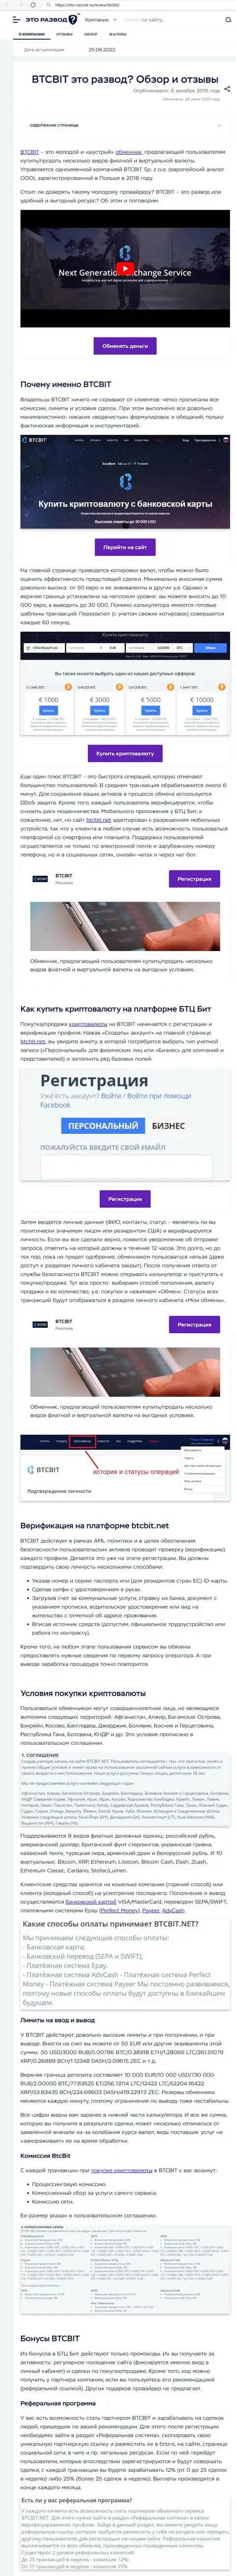 Разбор деятельности и условия для сотрудничества online обменника BTC Bit в обзорной статье на web-сайте eto-razvod ru